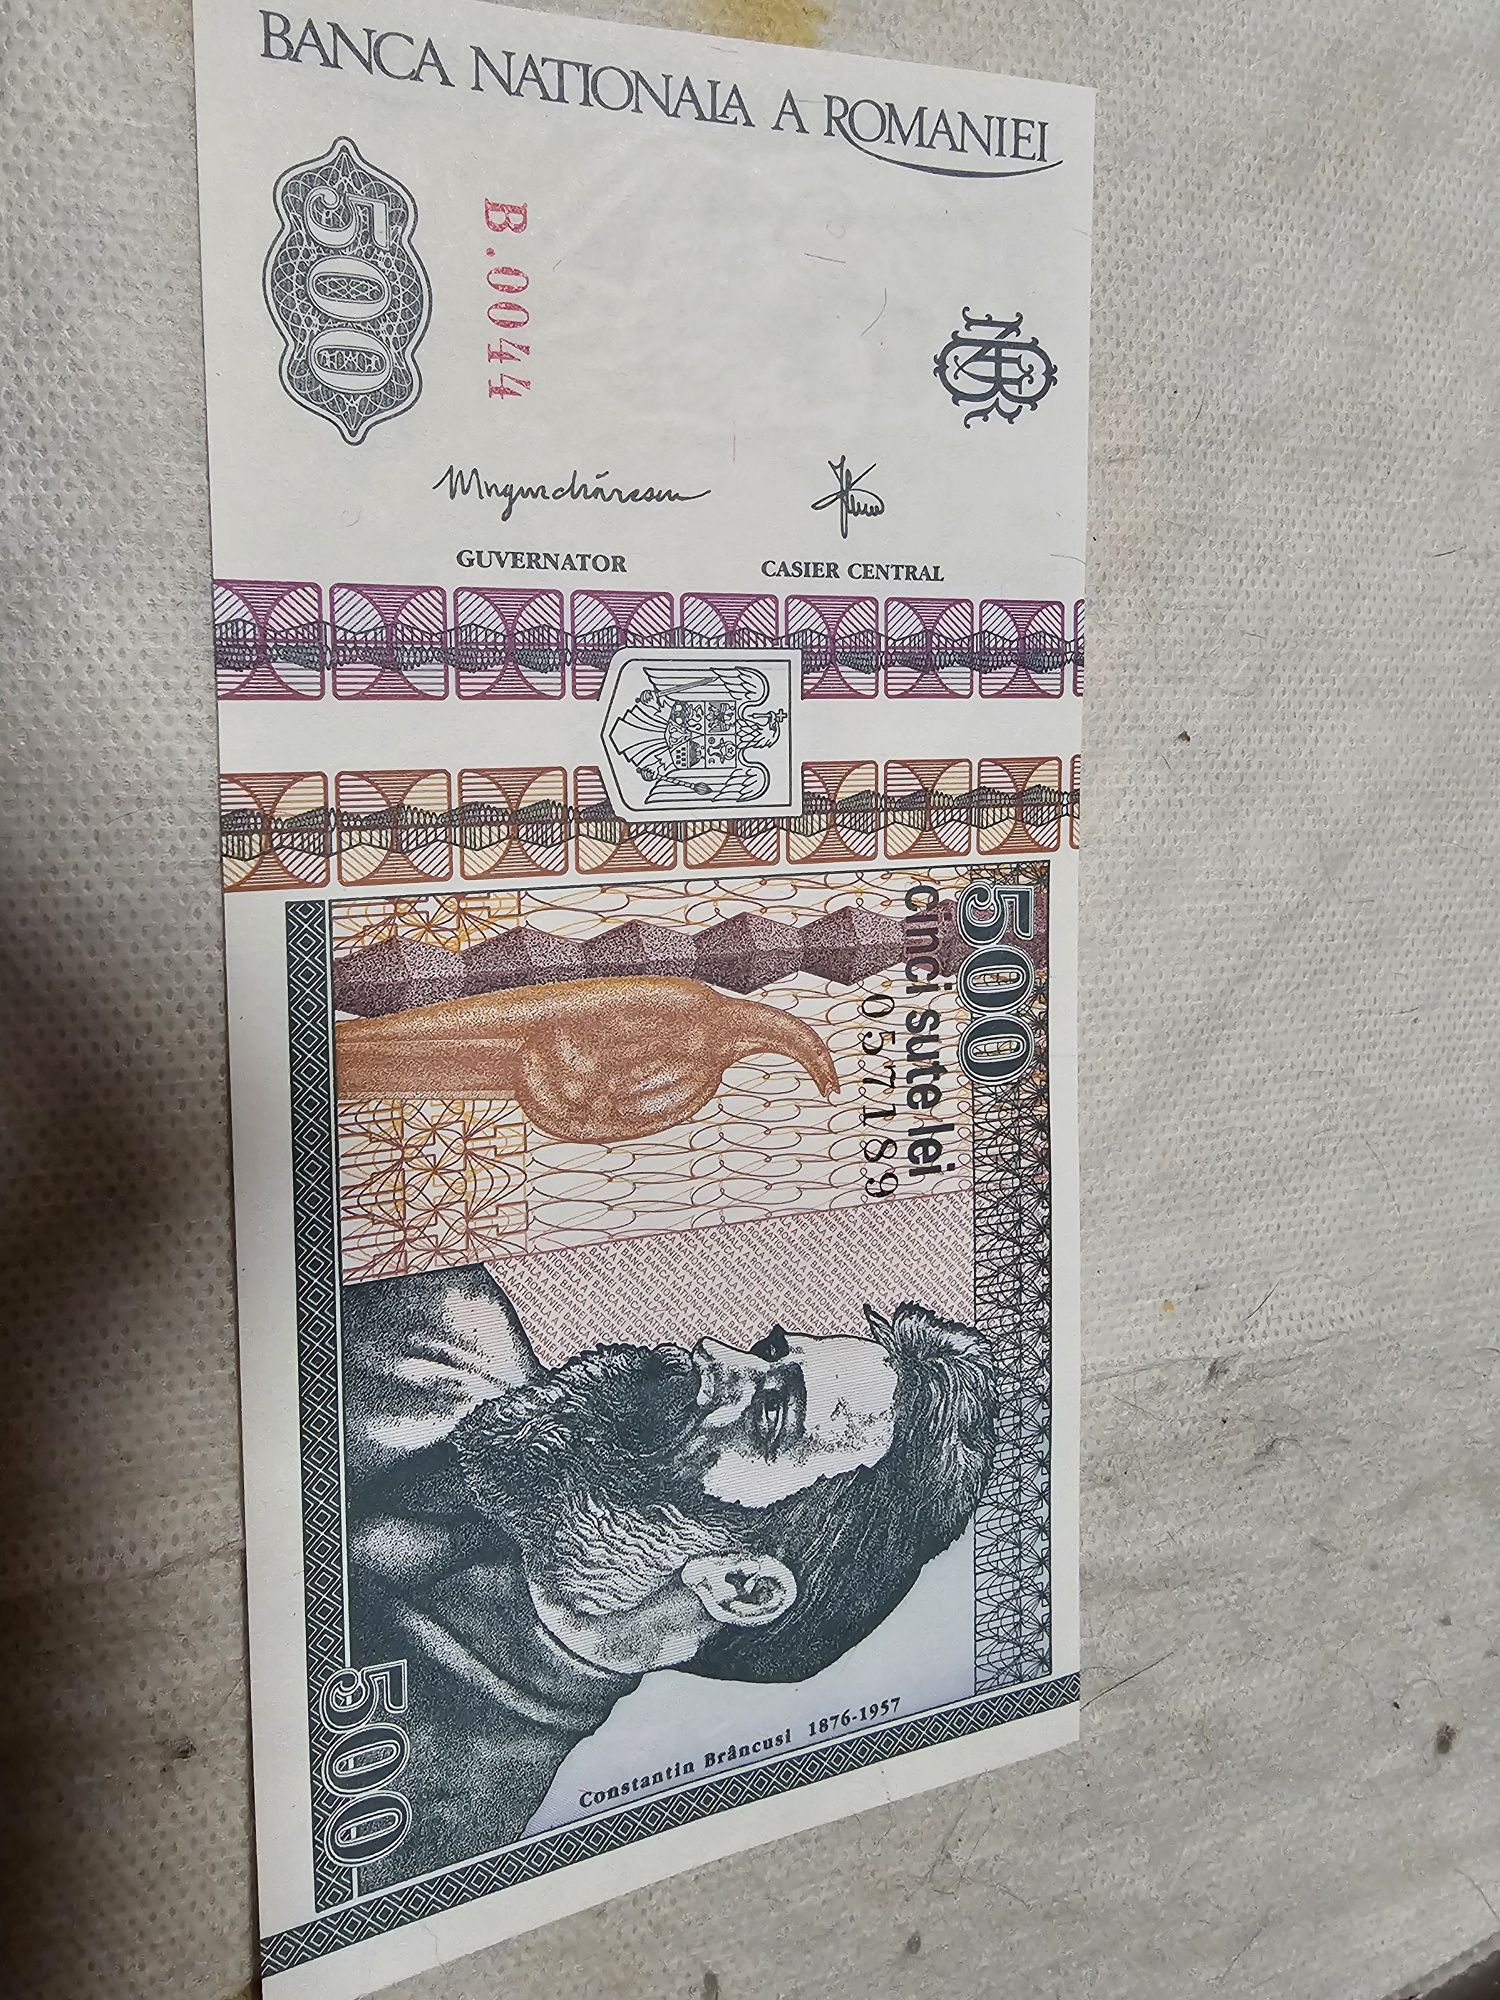 Vand bancnote românești vechi